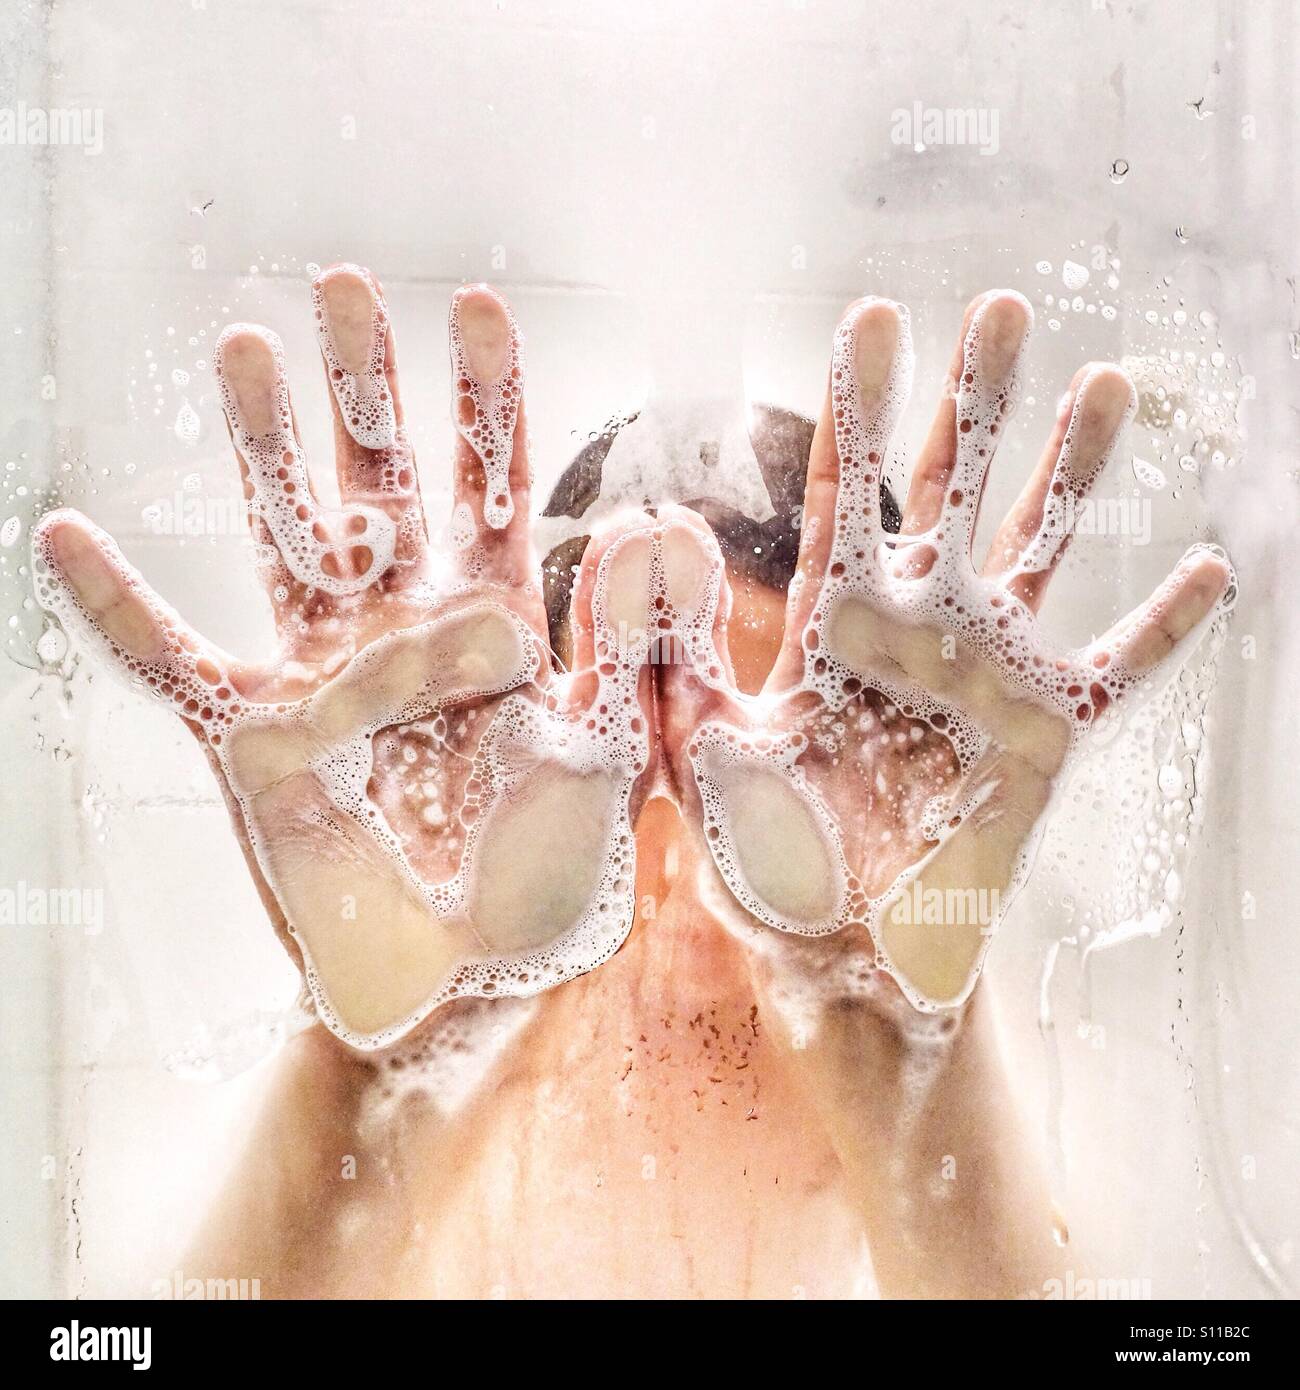 L'enfant mains savonneuse pressé contre la porte de la douche Banque D'Images